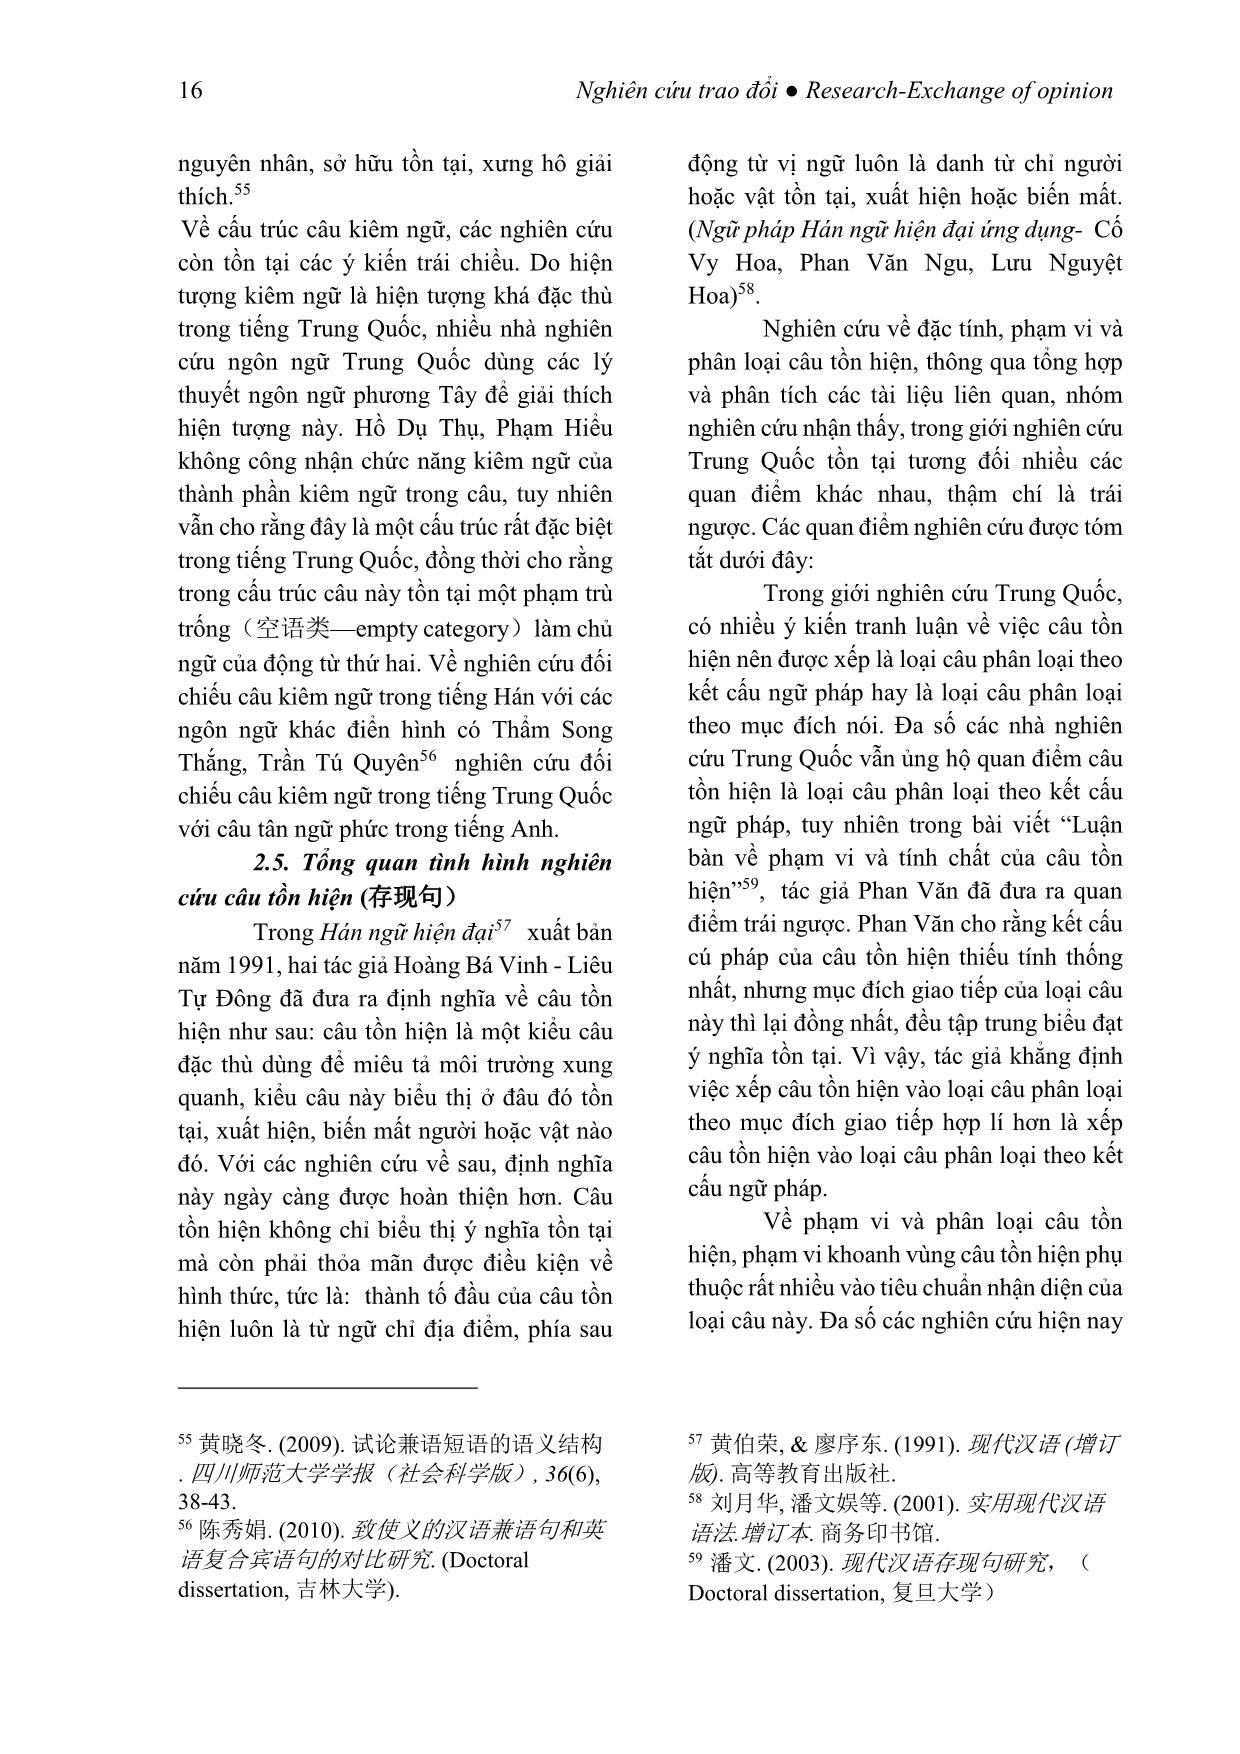 Tình hình nghiên cứu các kiểu câu đặc biệt trong tiếng Trung Quốc tại Trung Quốc trang 8